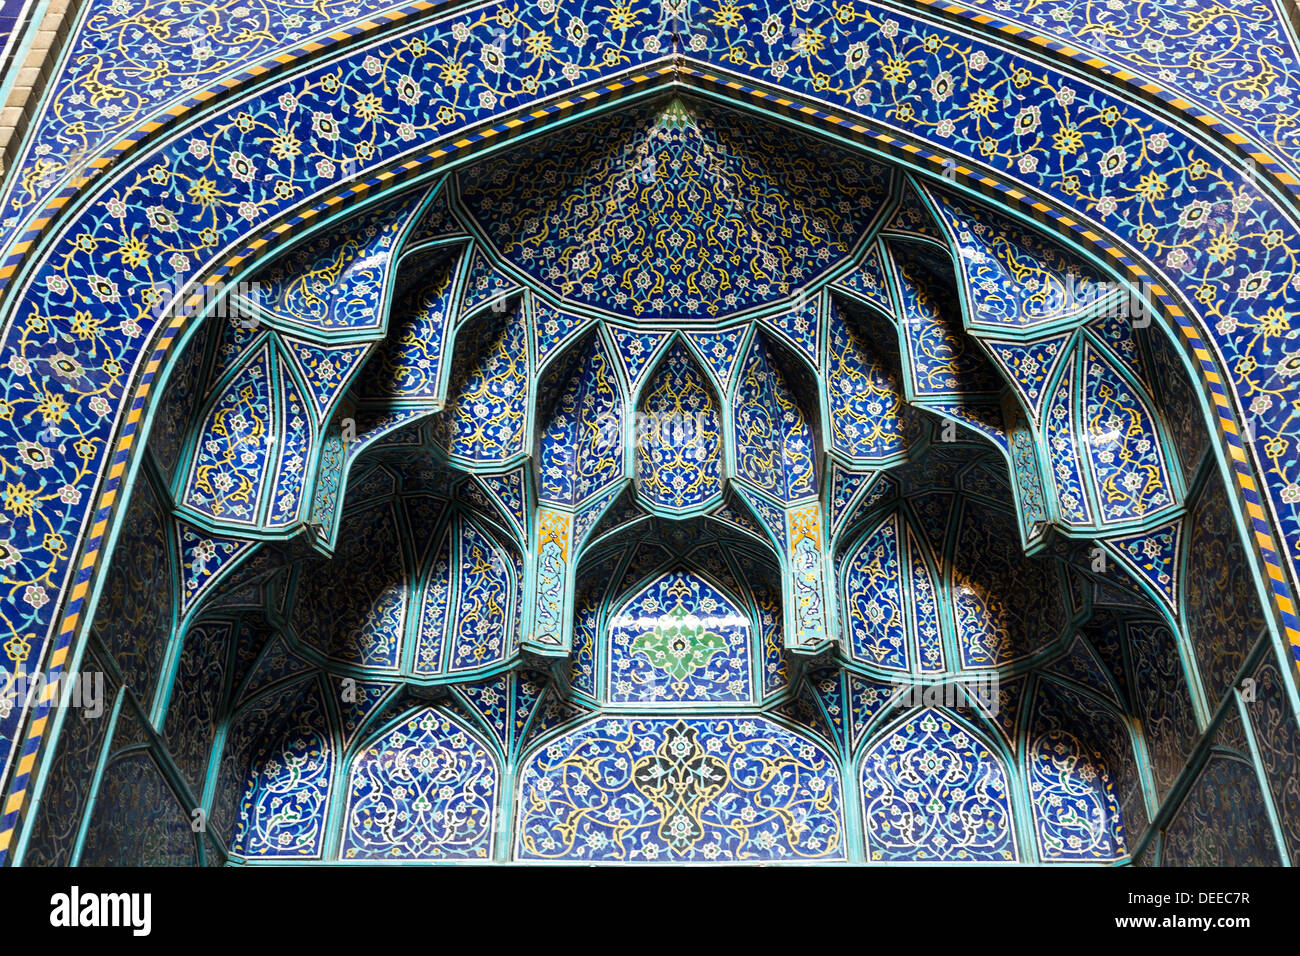 Detalle del mosaico, el jeque del mihrab de la Mezquita Lutfallah, Isfahan, Irán Foto de stock